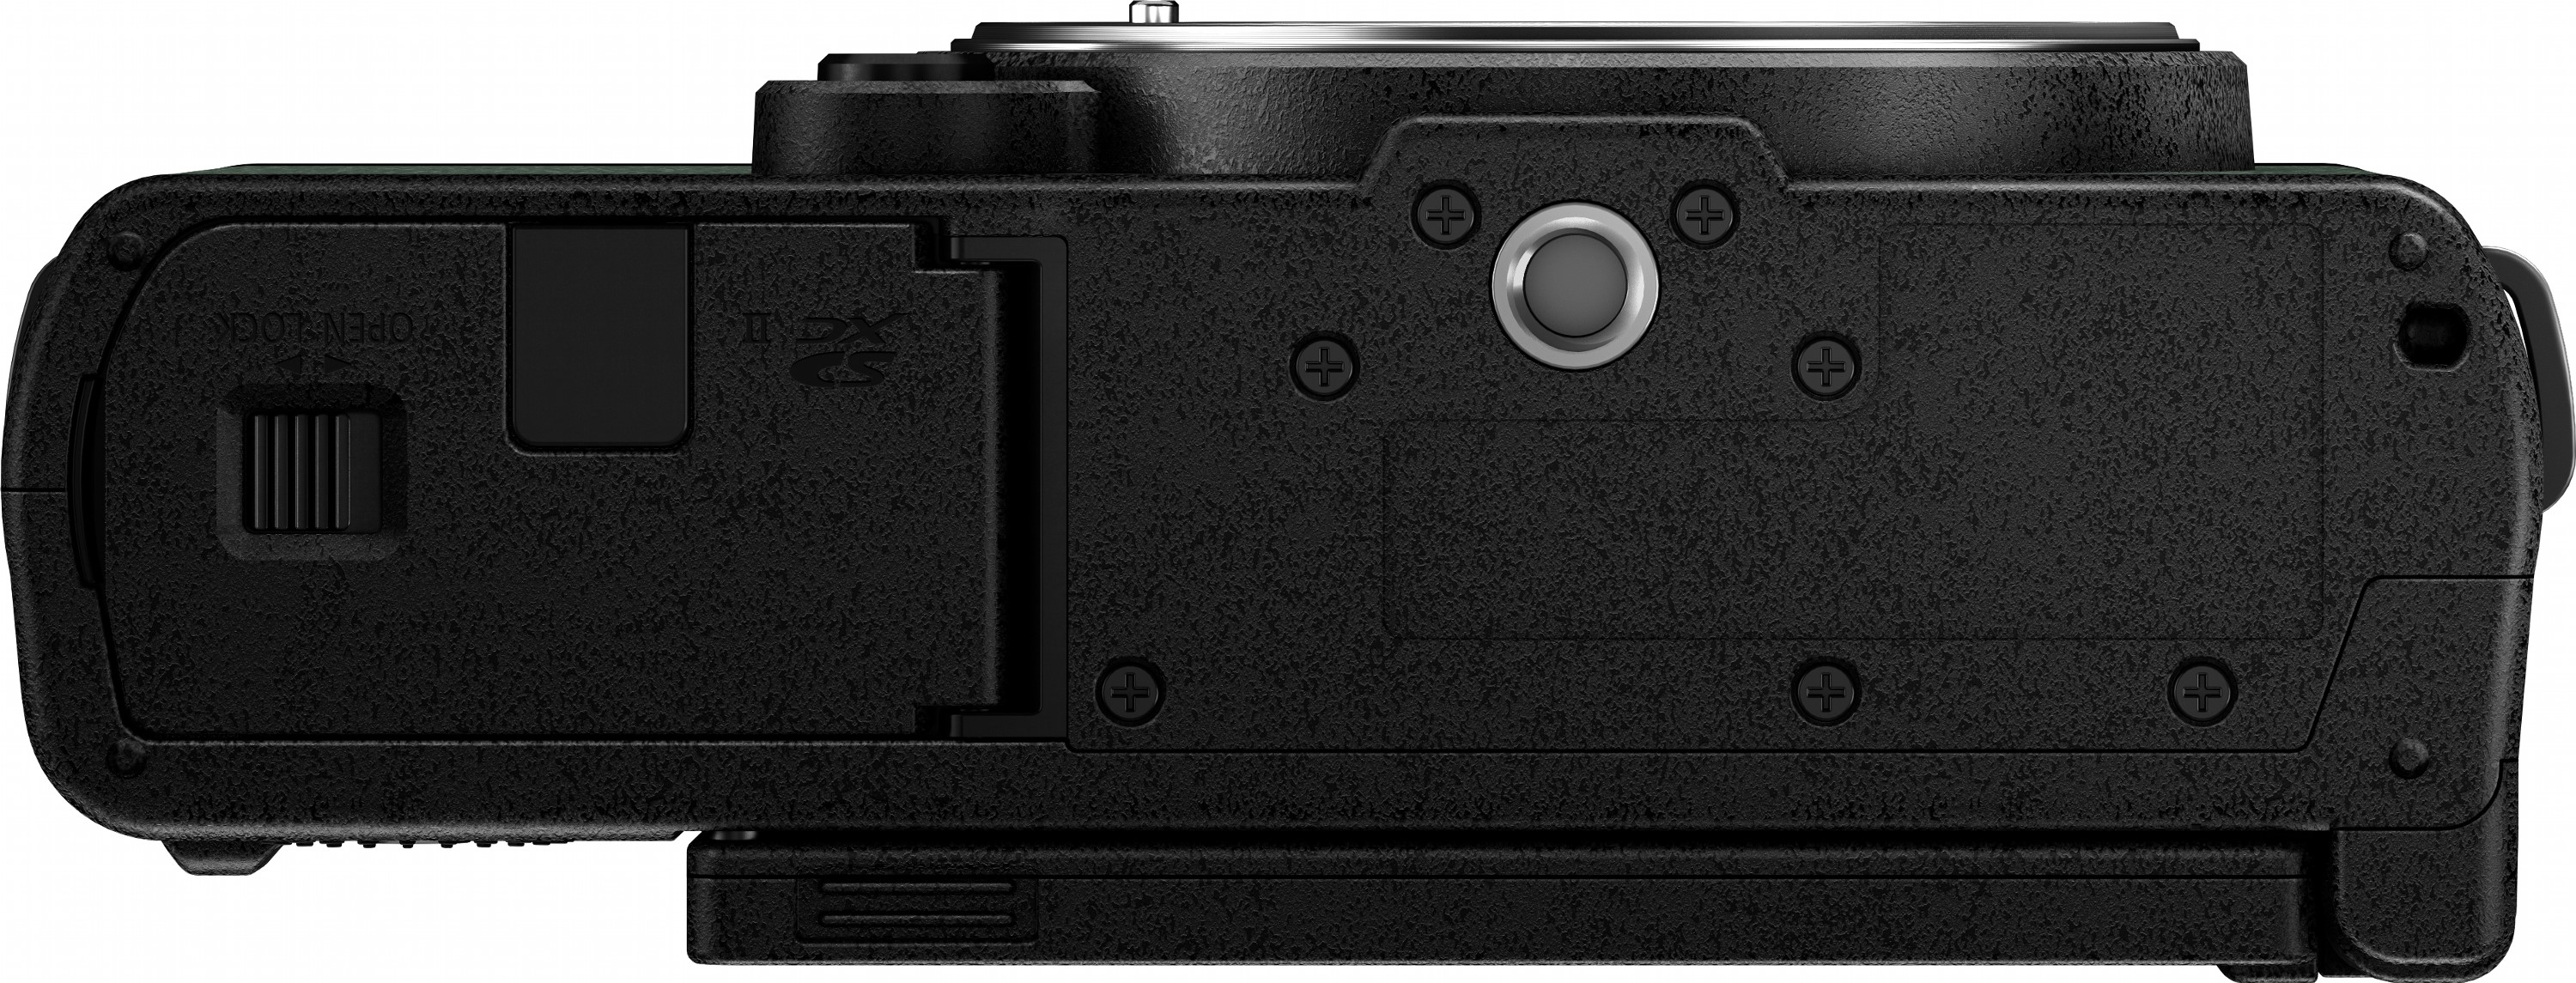 Фотоапарат Panasonic Lumix DC-S9 + 20-60mm f/3.5-5.6 Dark Olive (DC-S9KE-G)фото10